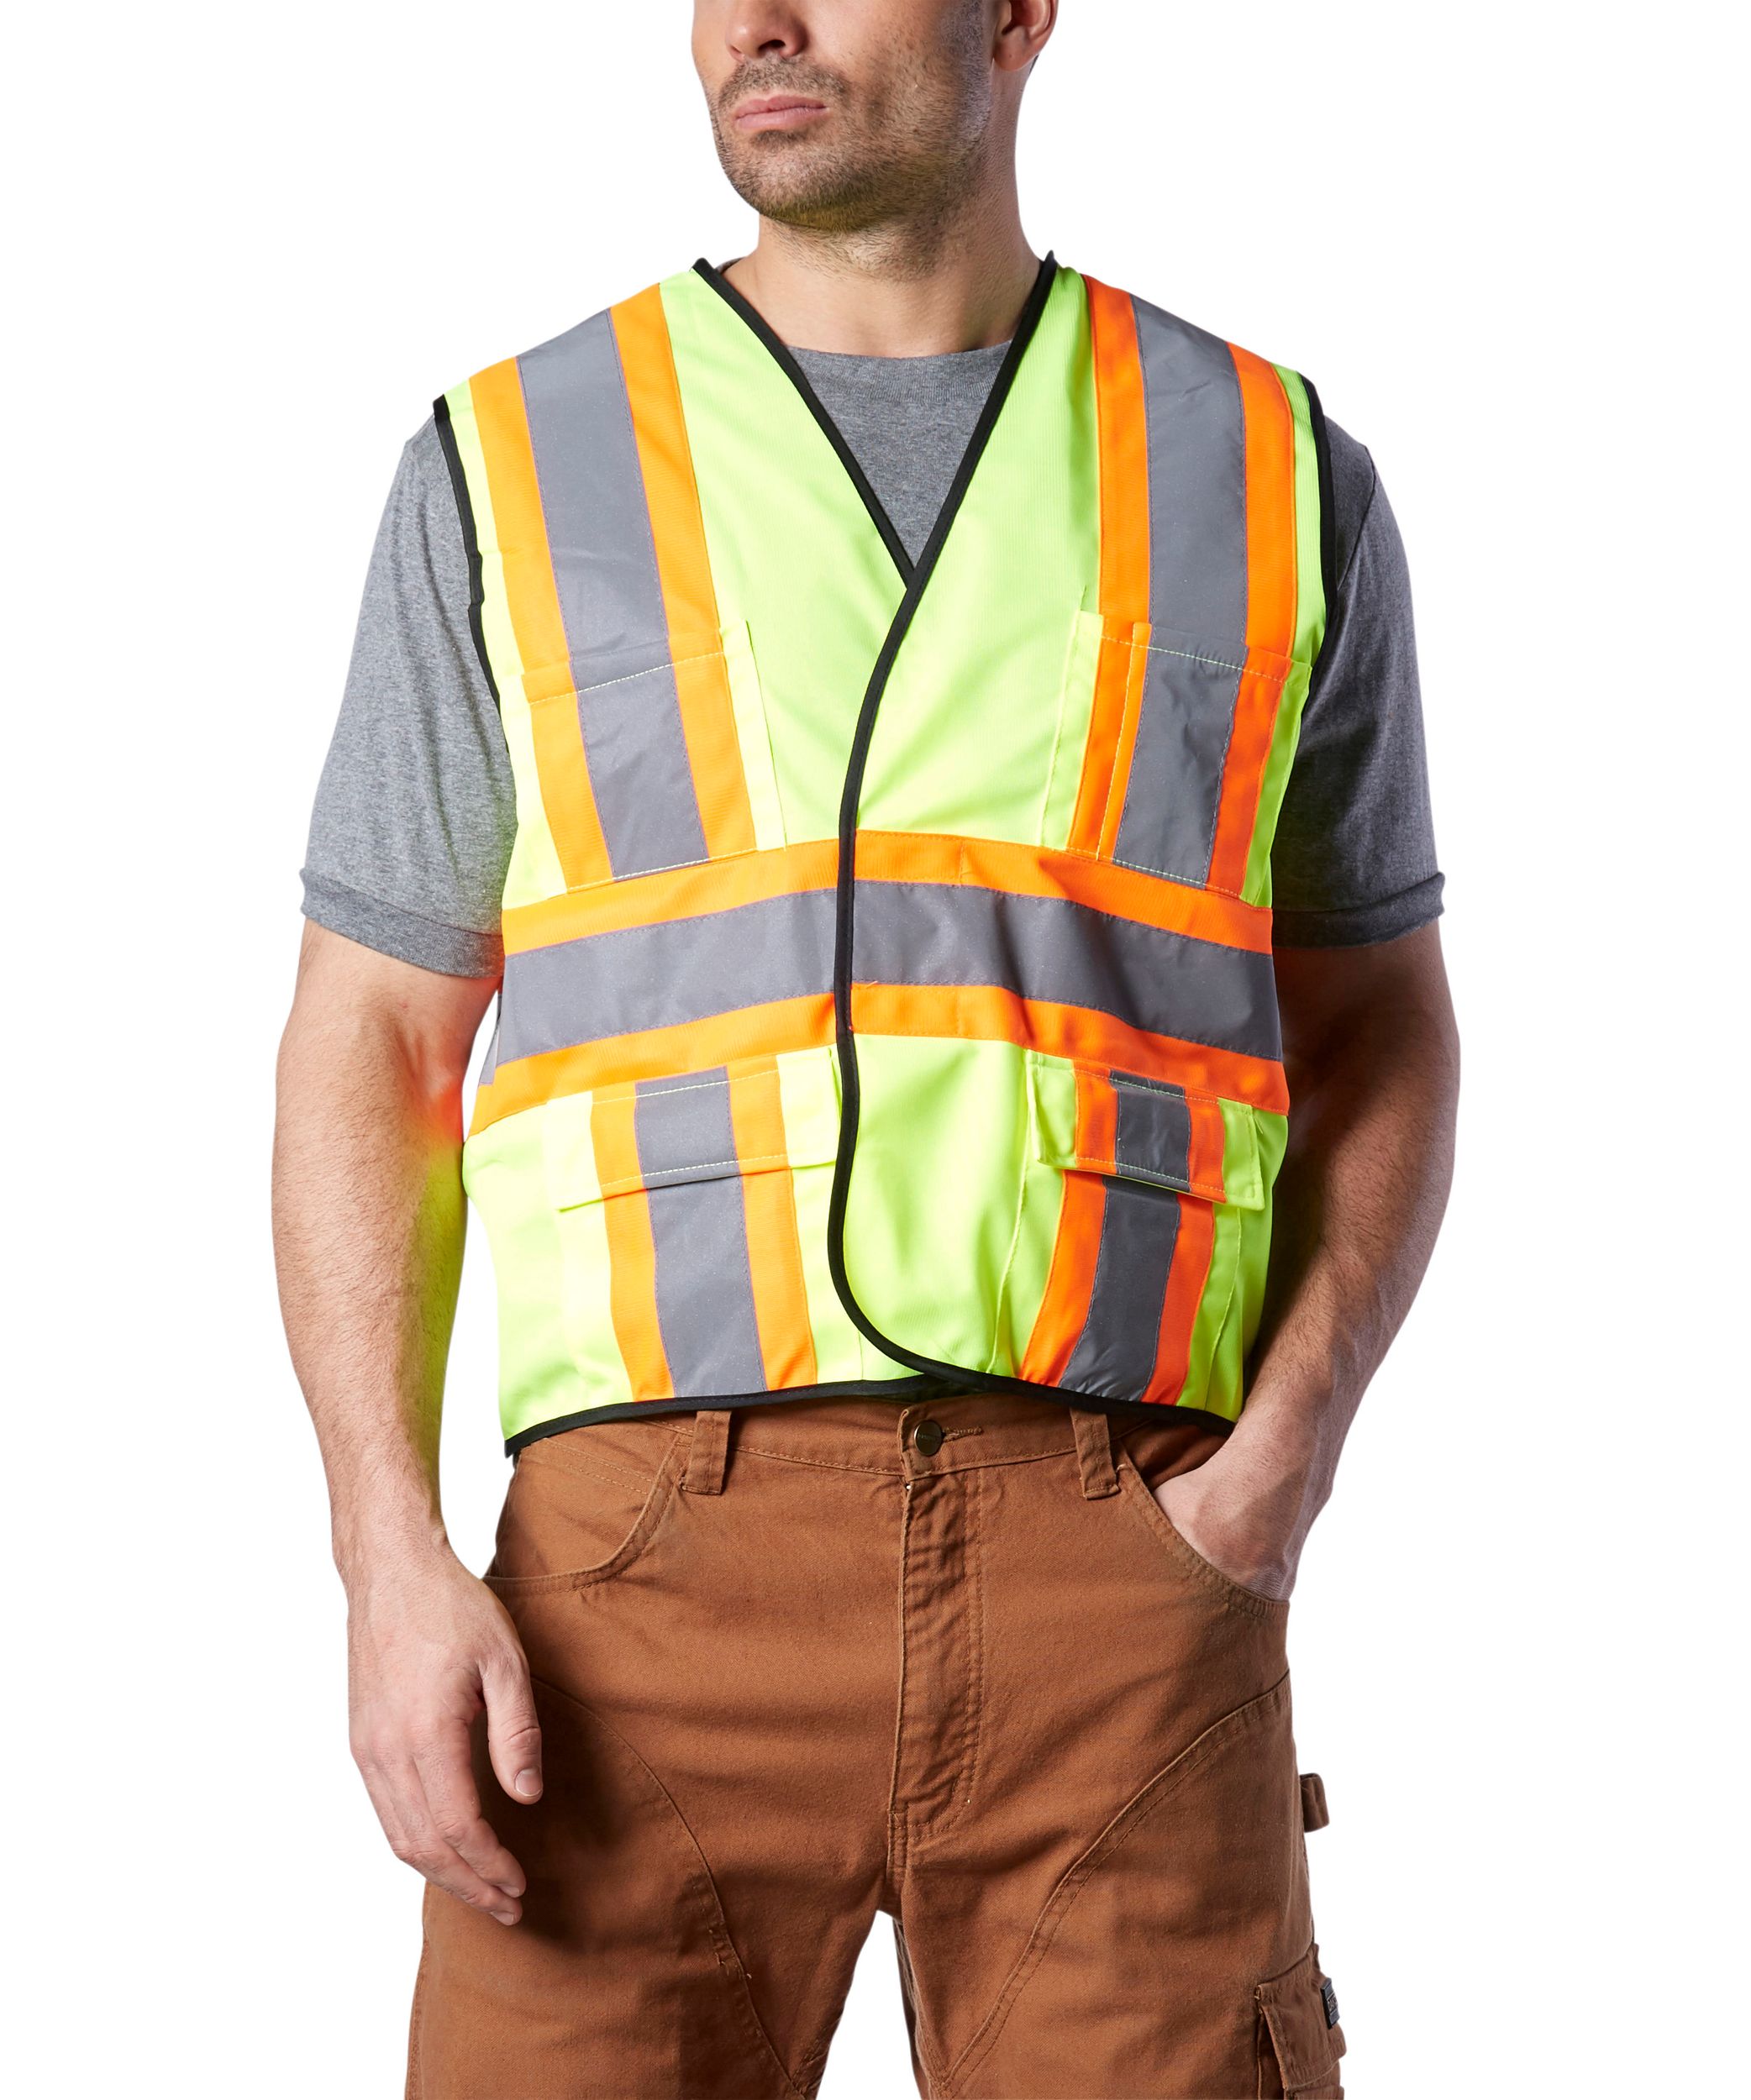 Men's FR Hi-Visibility Safety Vest